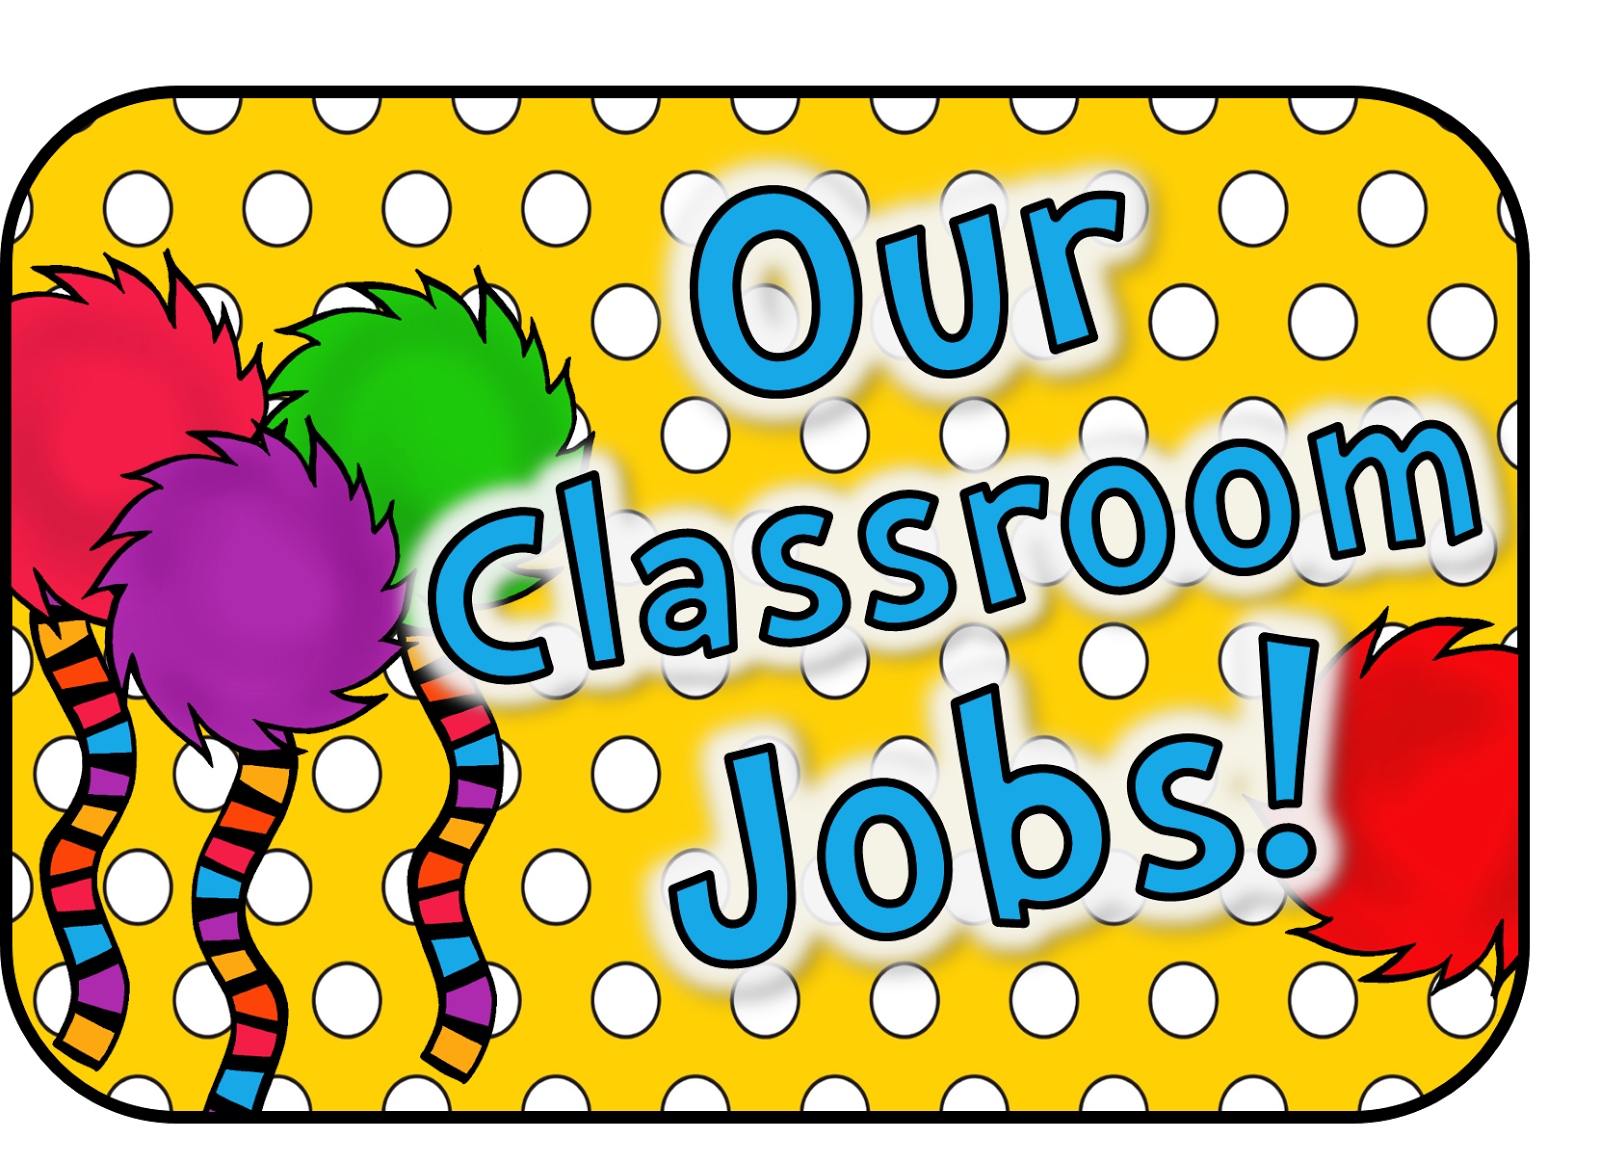 classroom jobs clip art - photo #50